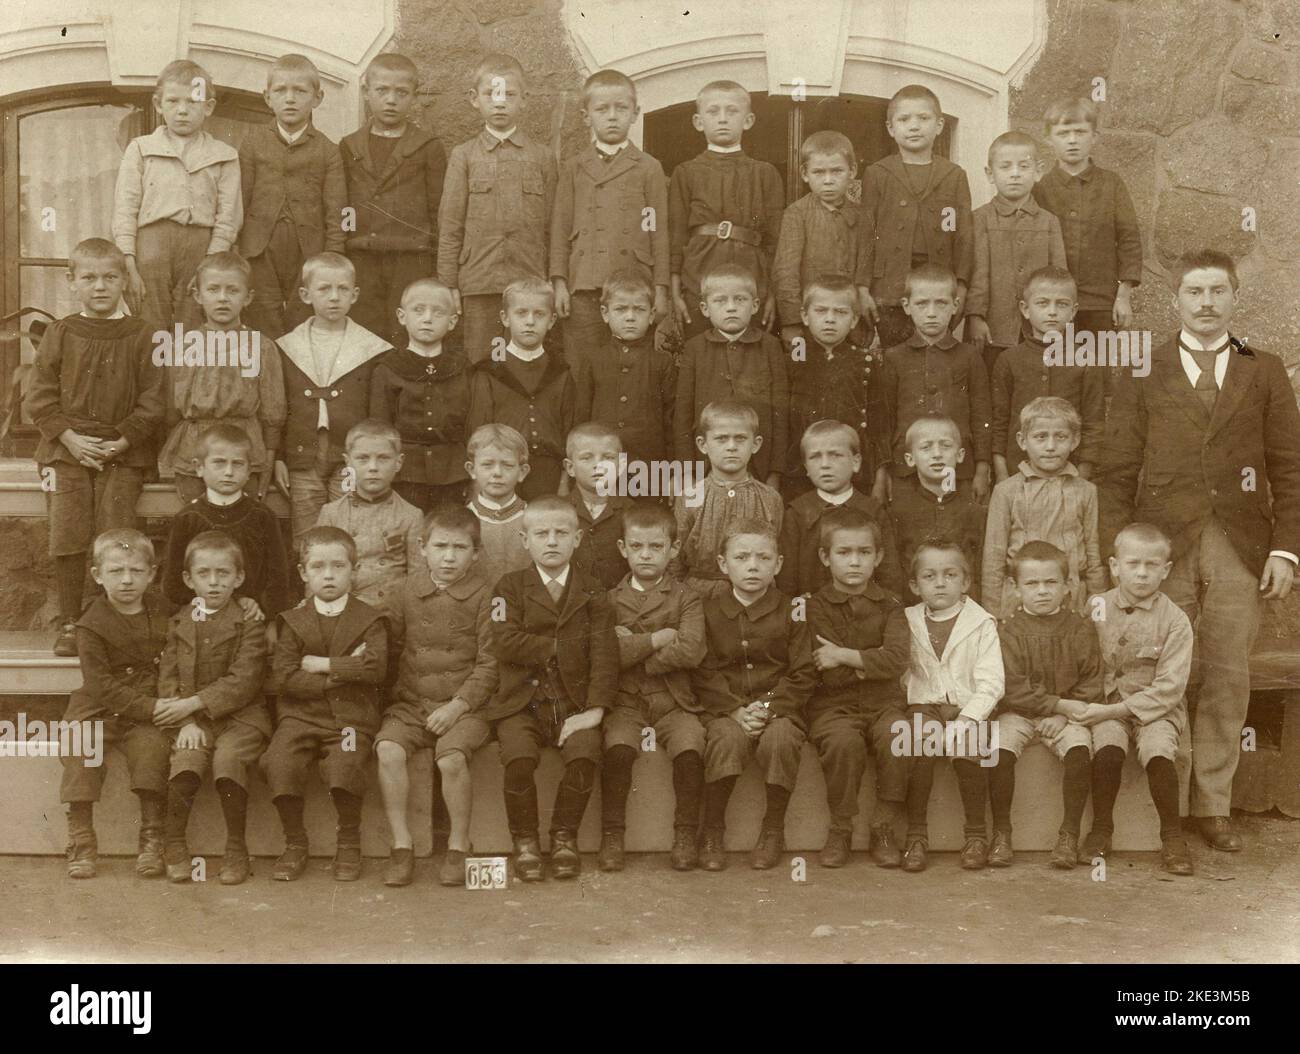 Klassenfoto mit kleinen Jungen aus der Grundschule, Deutschland 1880s Stockfoto